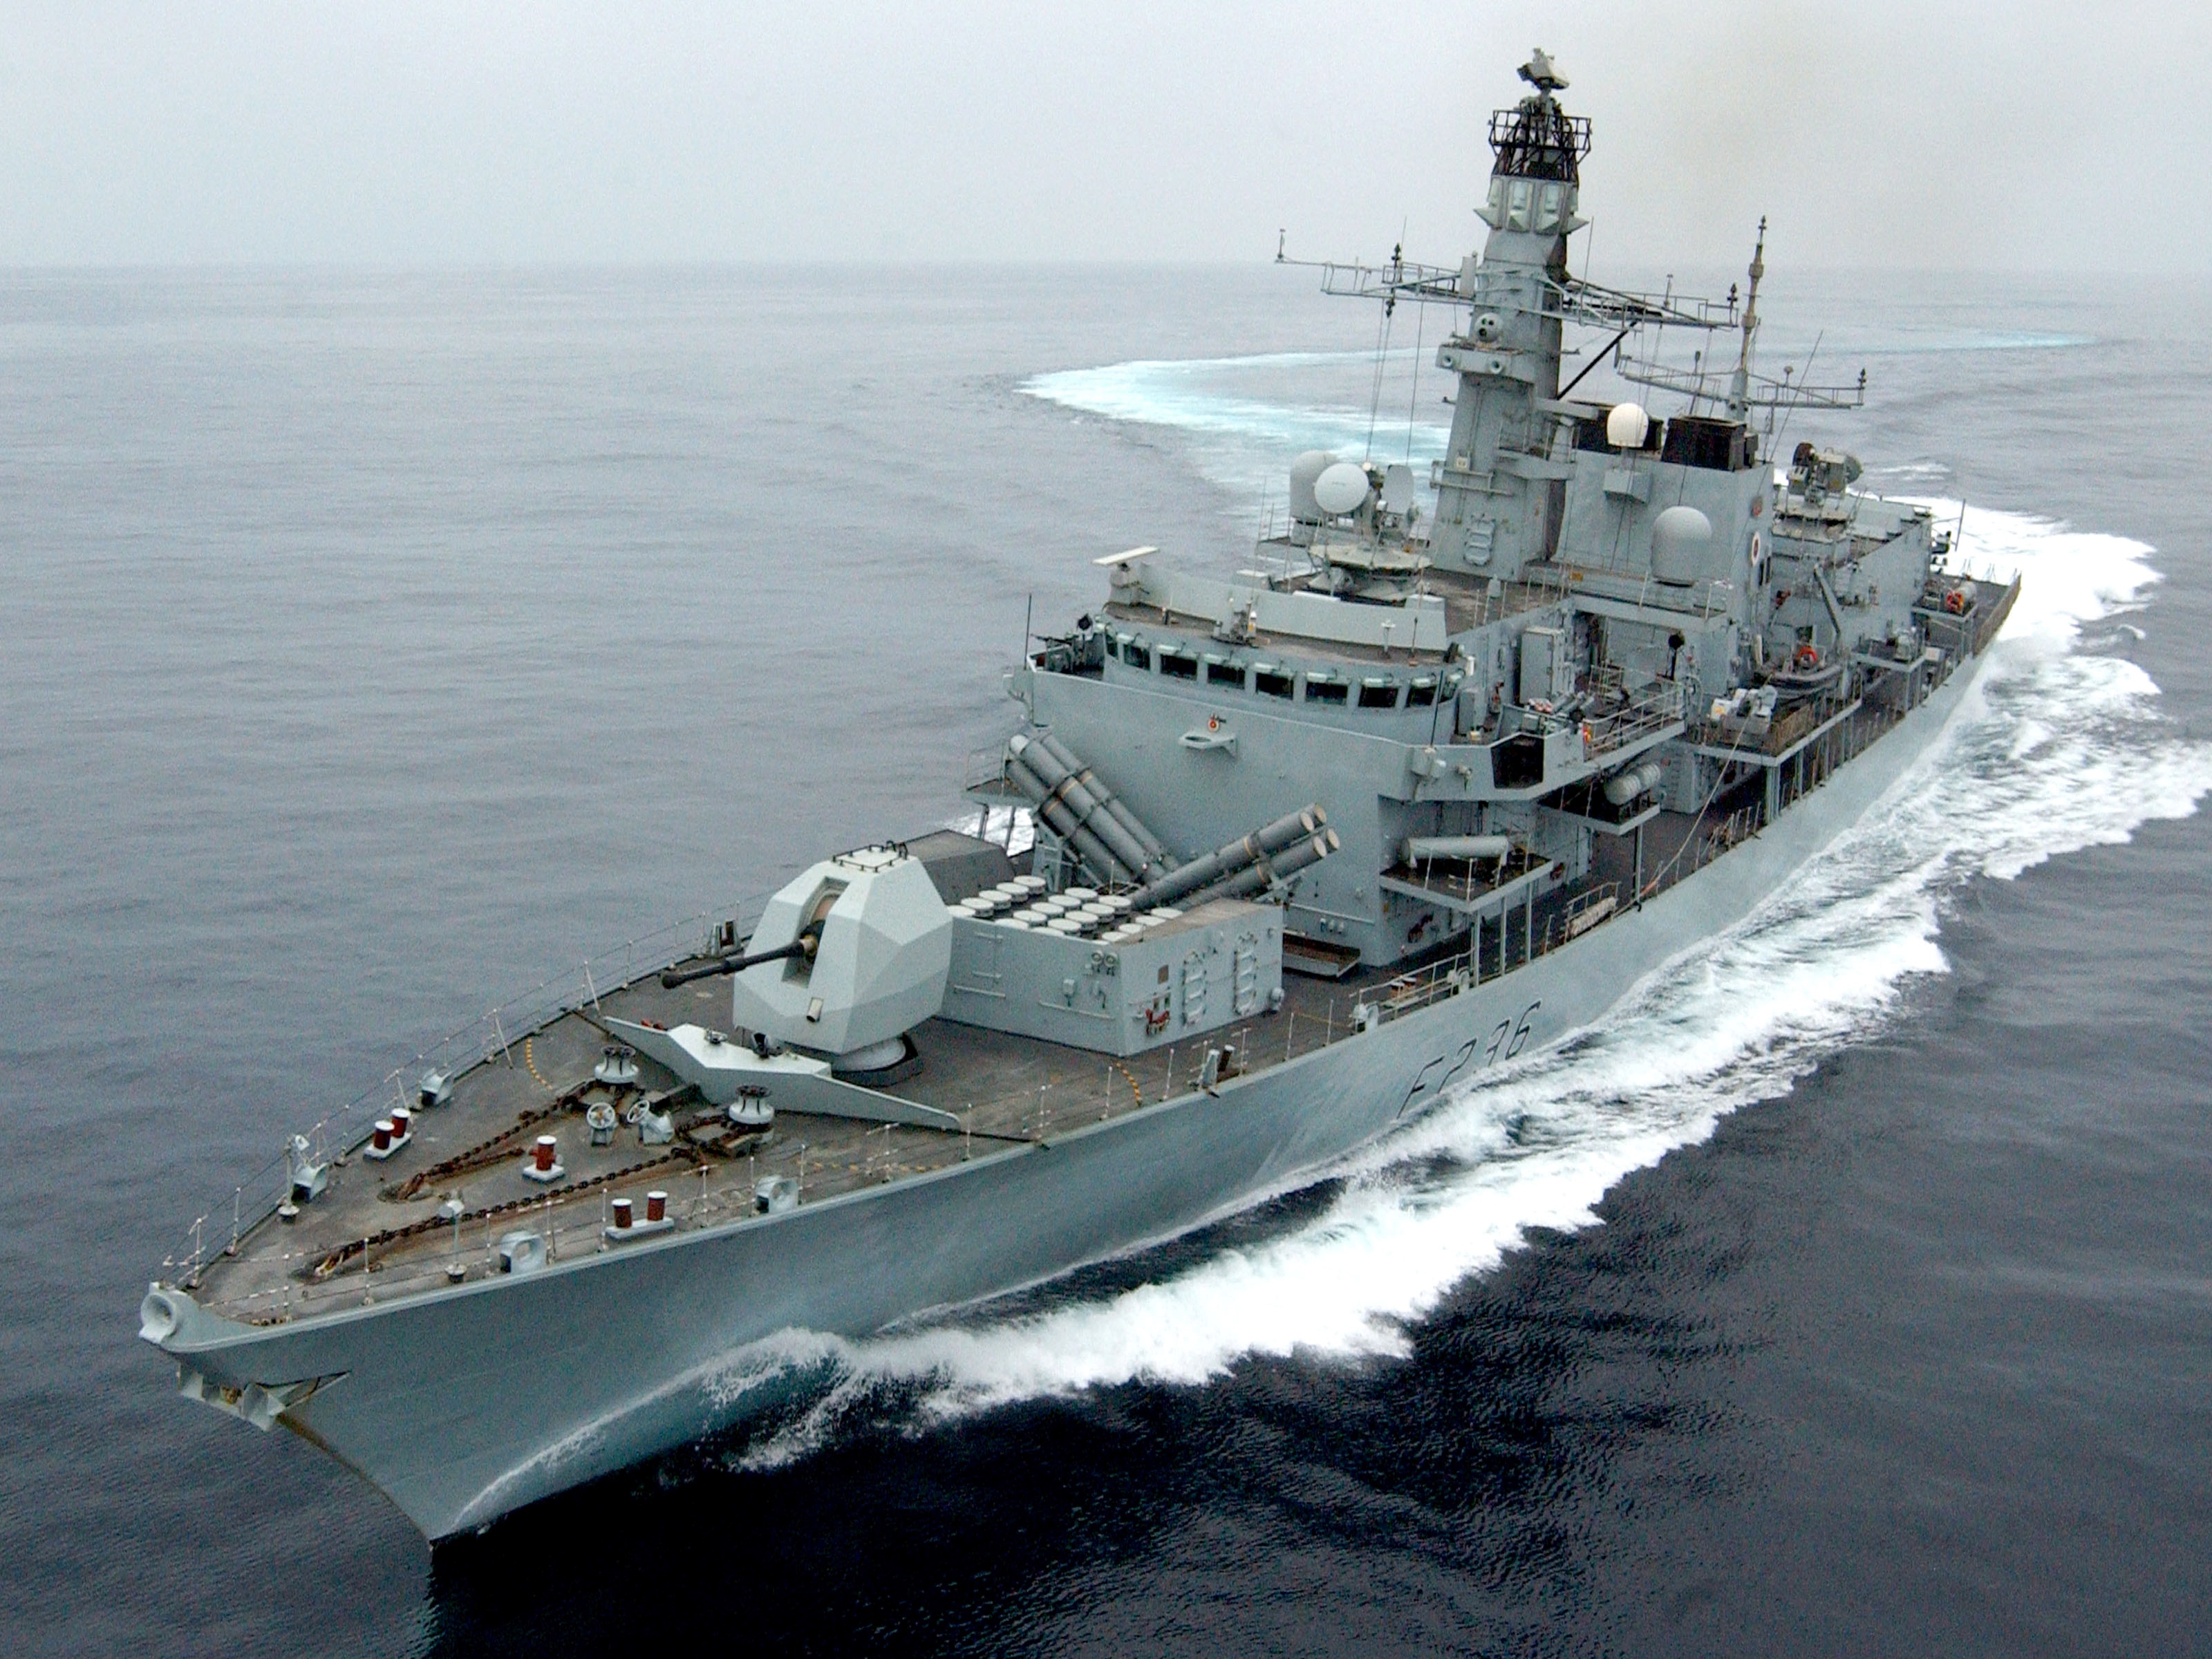 Un buque de guerra británico incautó misiles del régimen de Irán que estaban siendo enviados a los rebeldes en Yemen